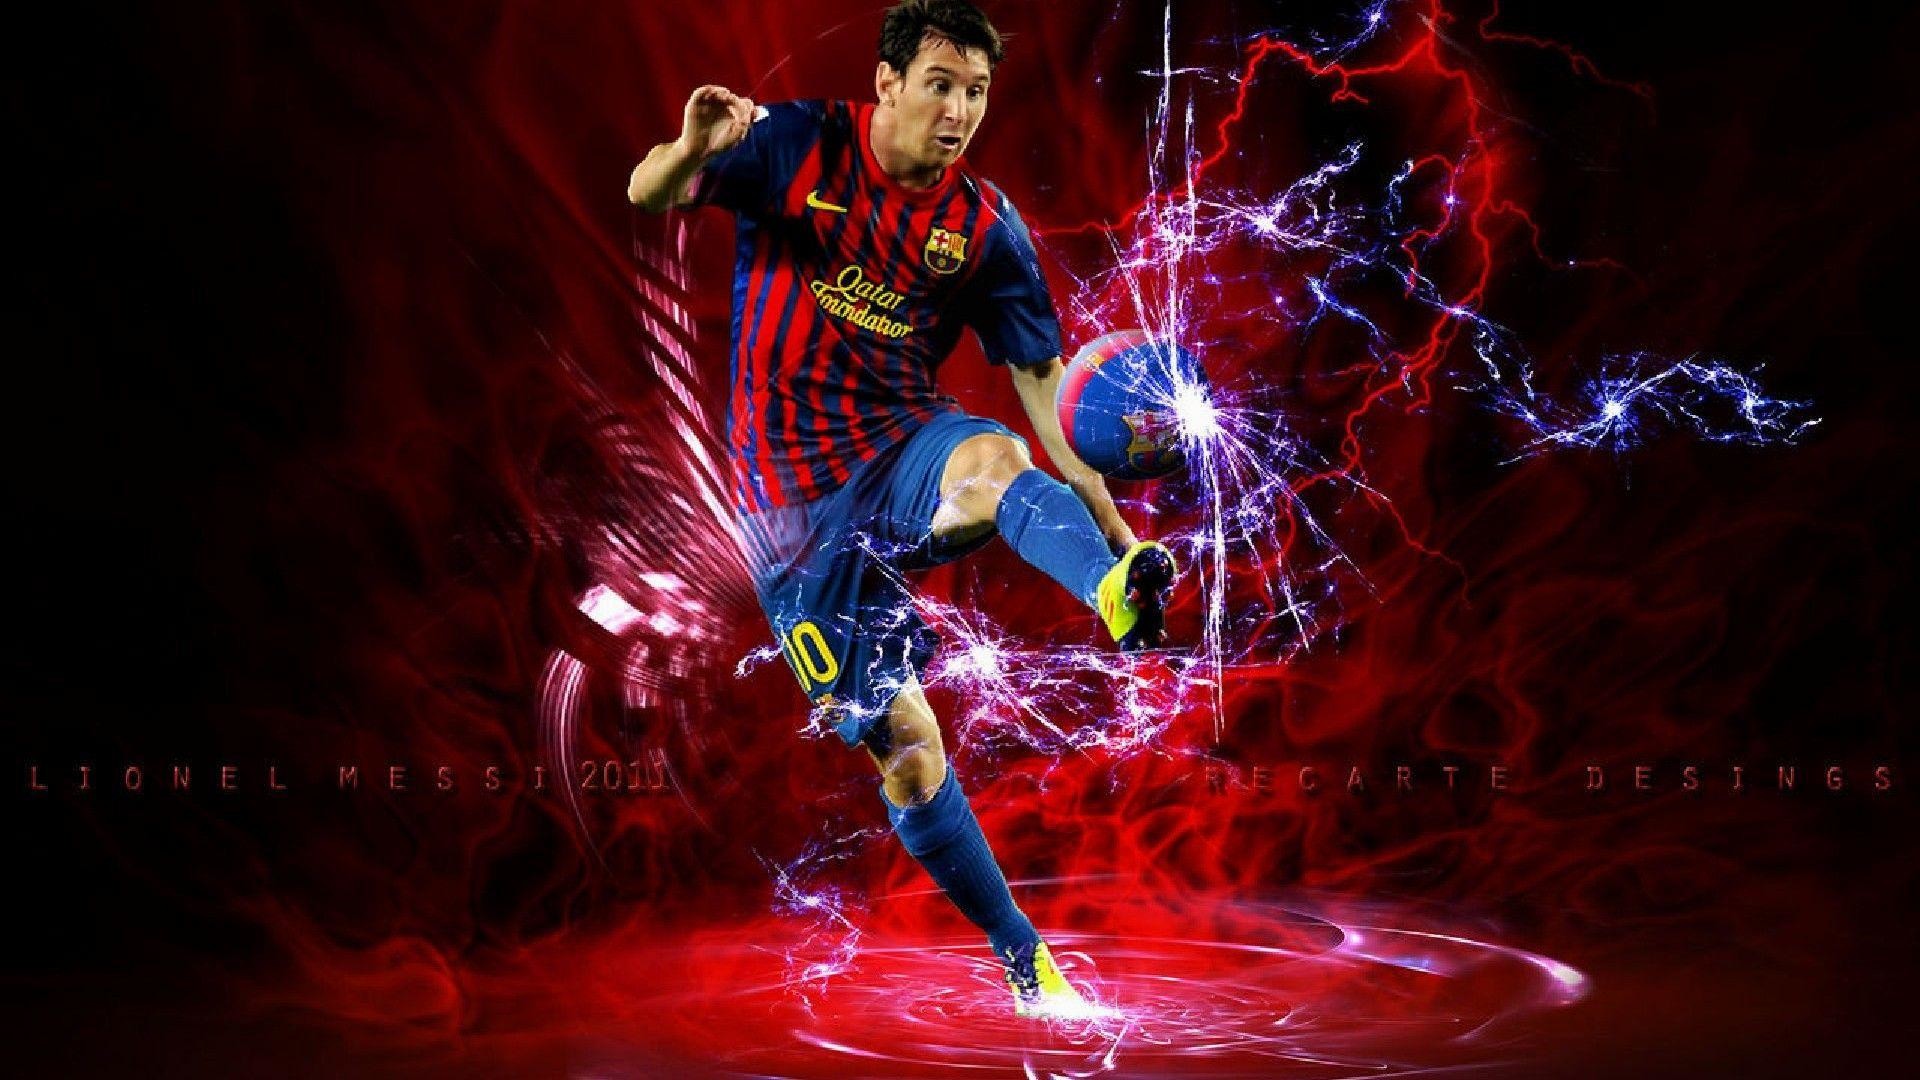 1920x1080 Lionel-Messi-Top-Goals-wallpaper-wp6407259